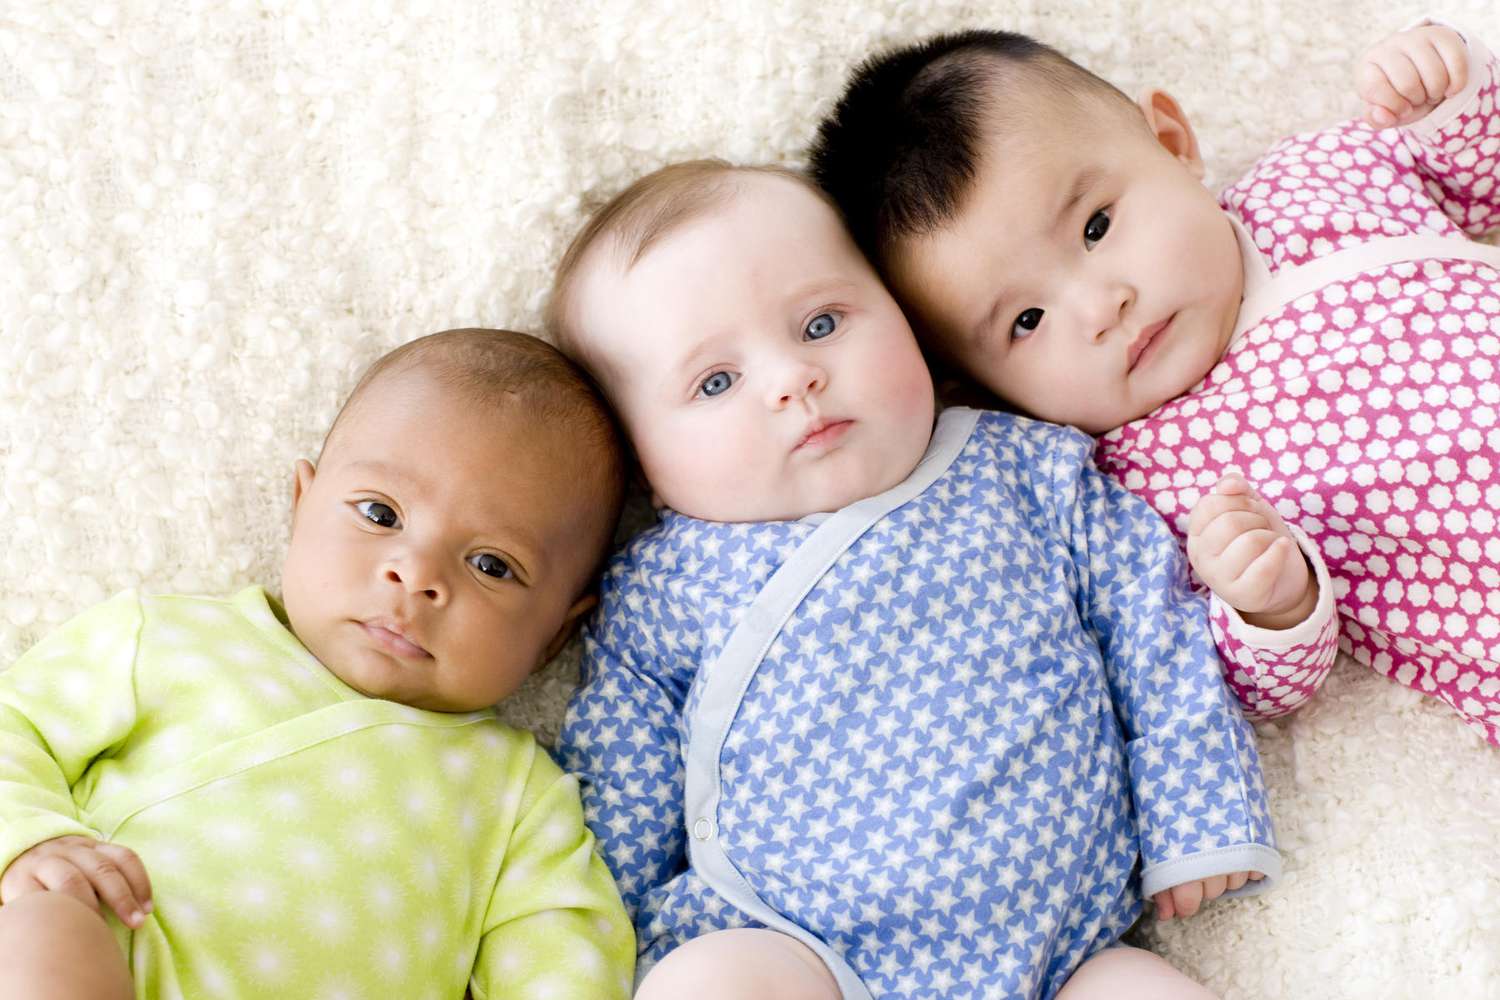 Three babies wearing colorful onesies